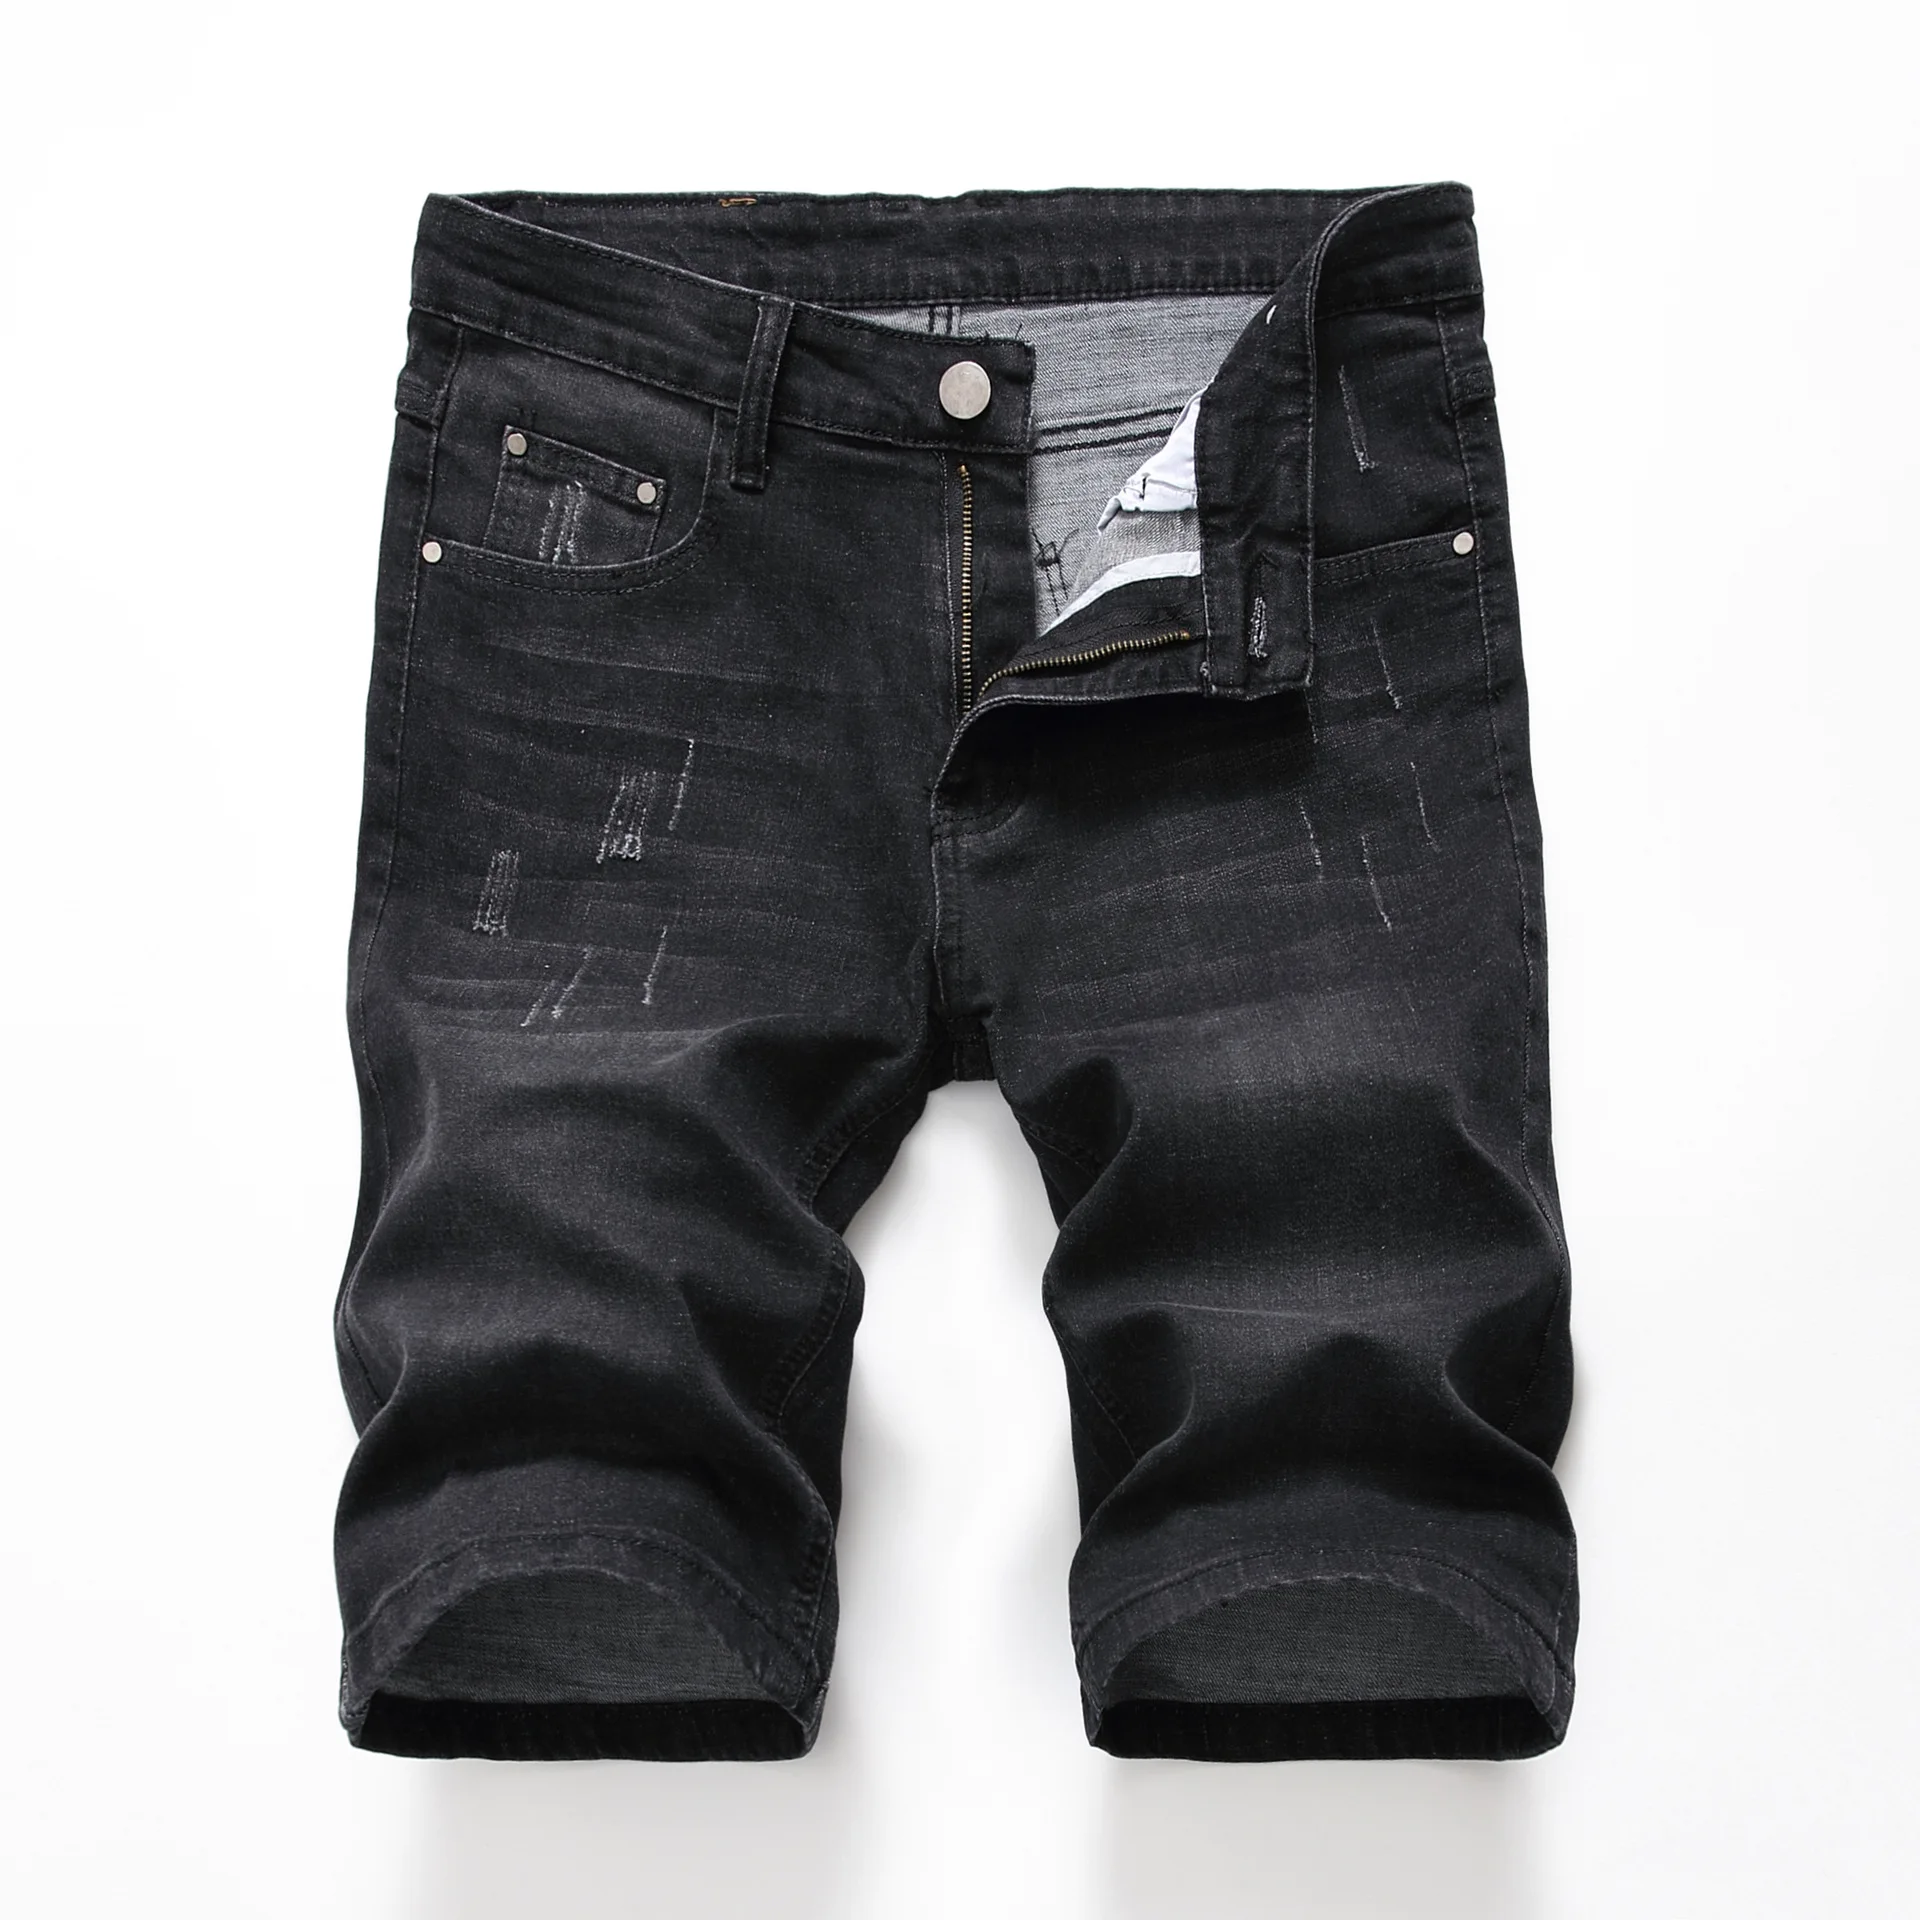 

Denyblood Jeans 2022 Summer Mens Stretch Denim Shorts Jeans Black Denim Bleach Washed Distressed Ripped Jeans for Men 1006